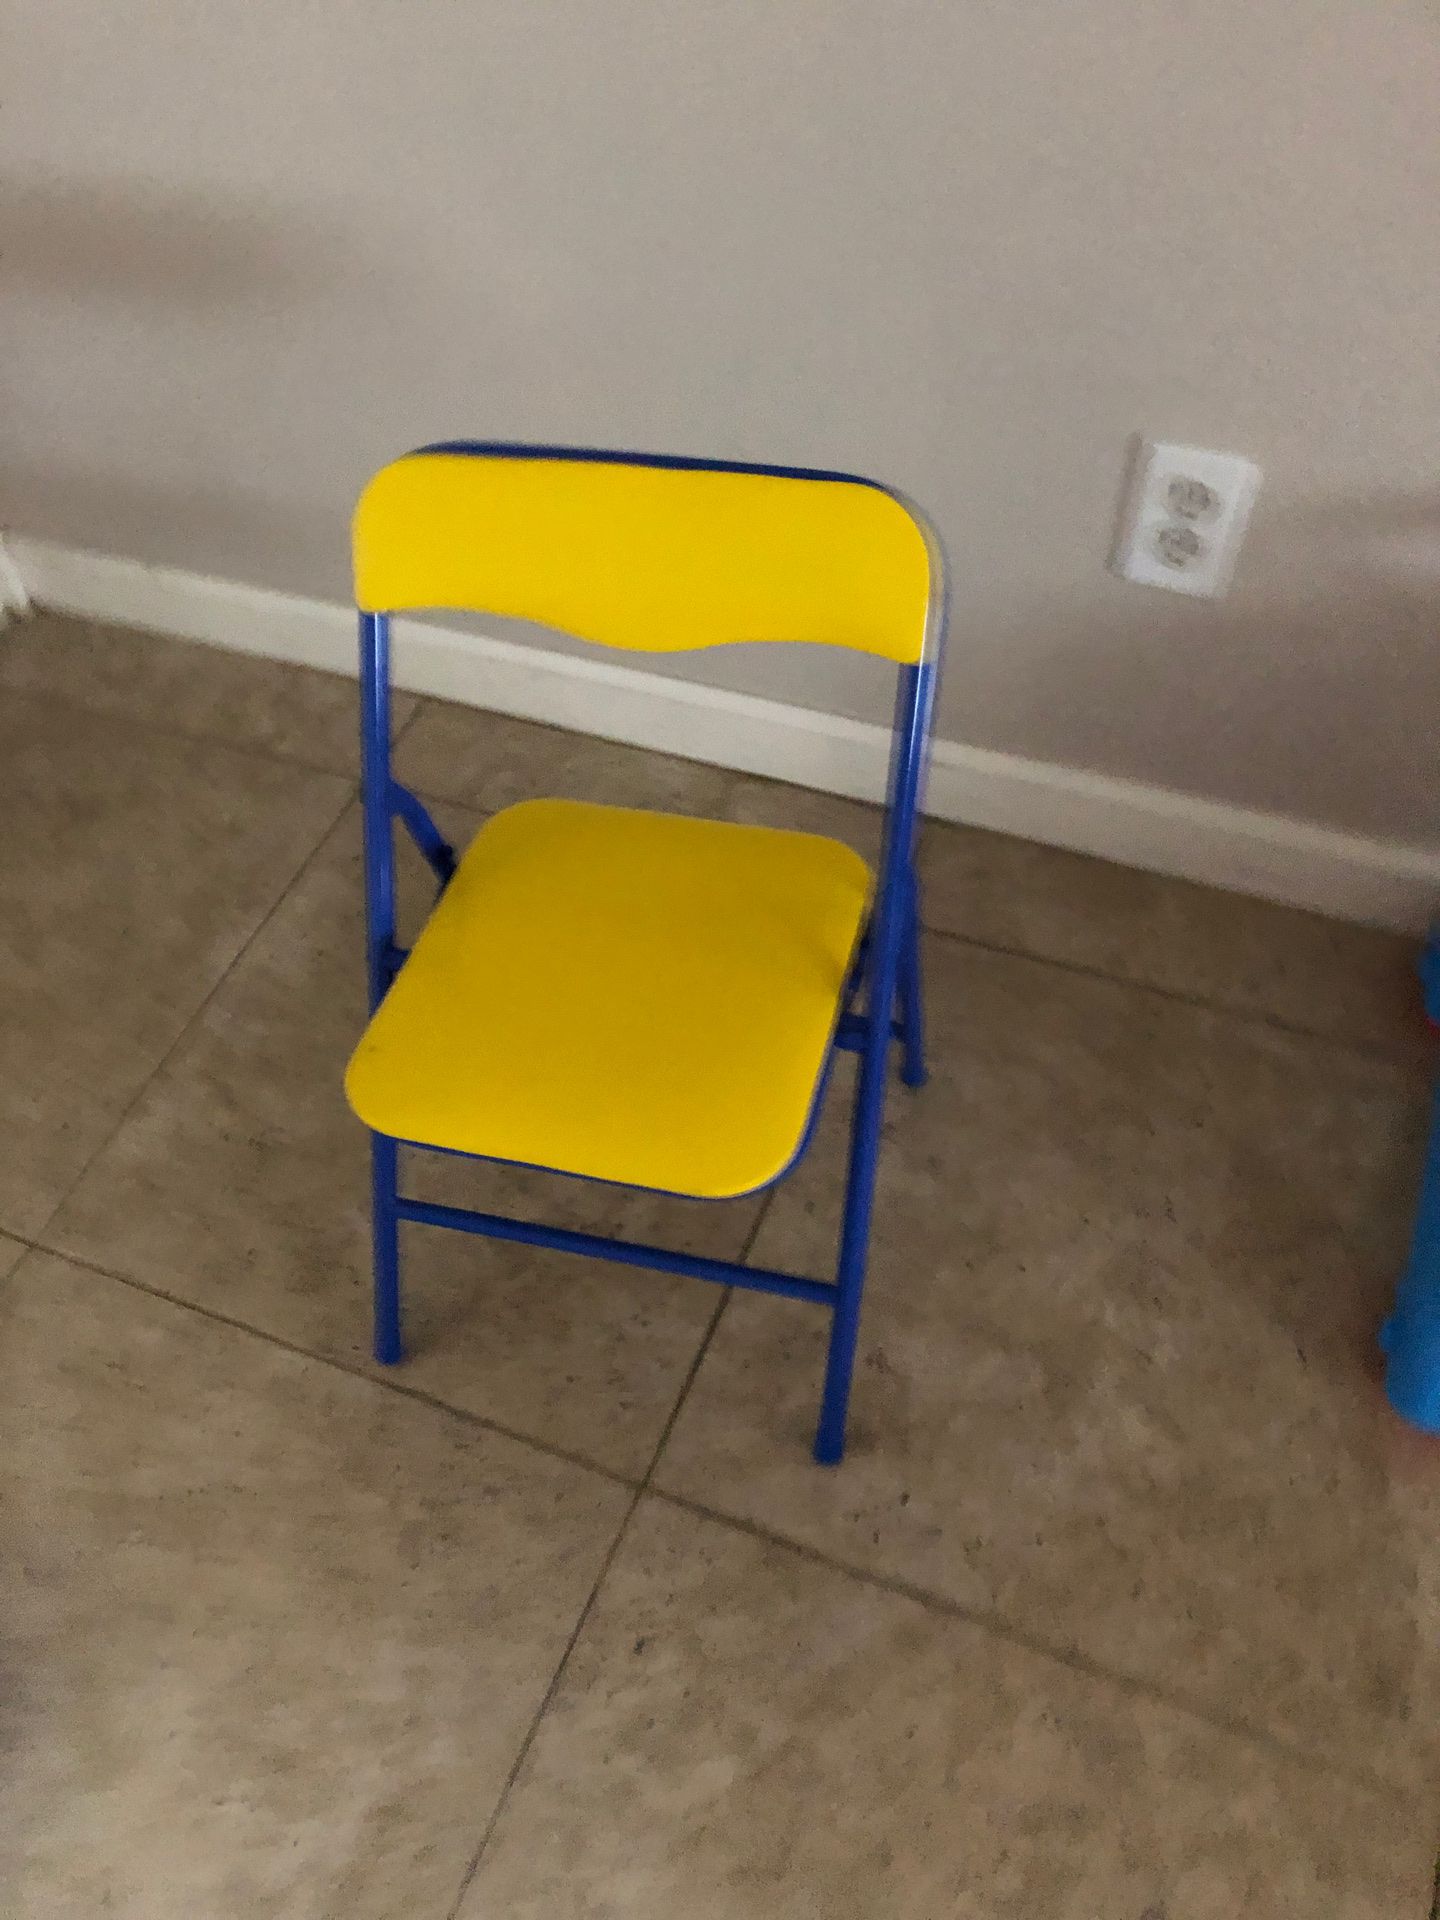 Child/kids chair